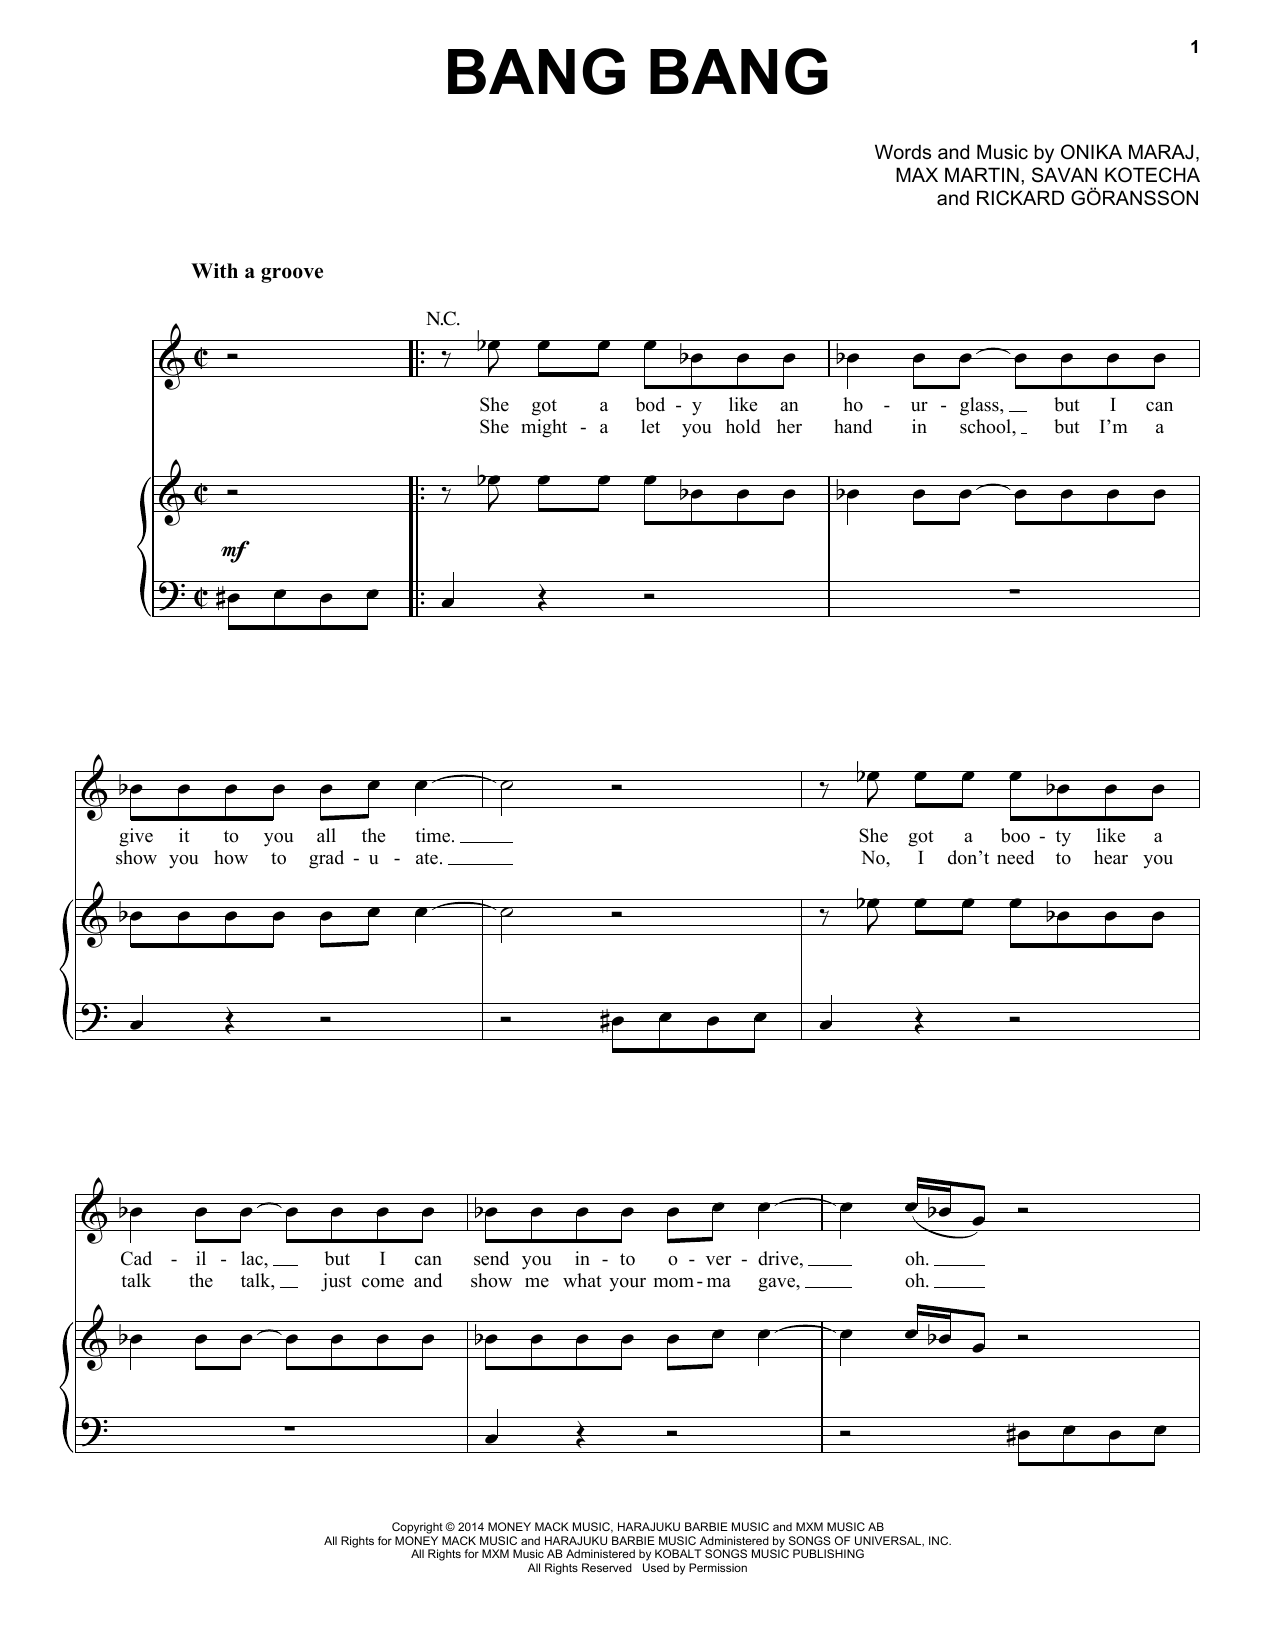 Jessie J, Ariana Grande & Nicki Minaj Bang Bang Sheet Music Notes & Chords for Piano, Vocal & Guitar (Right-Hand Melody) - Download or Print PDF